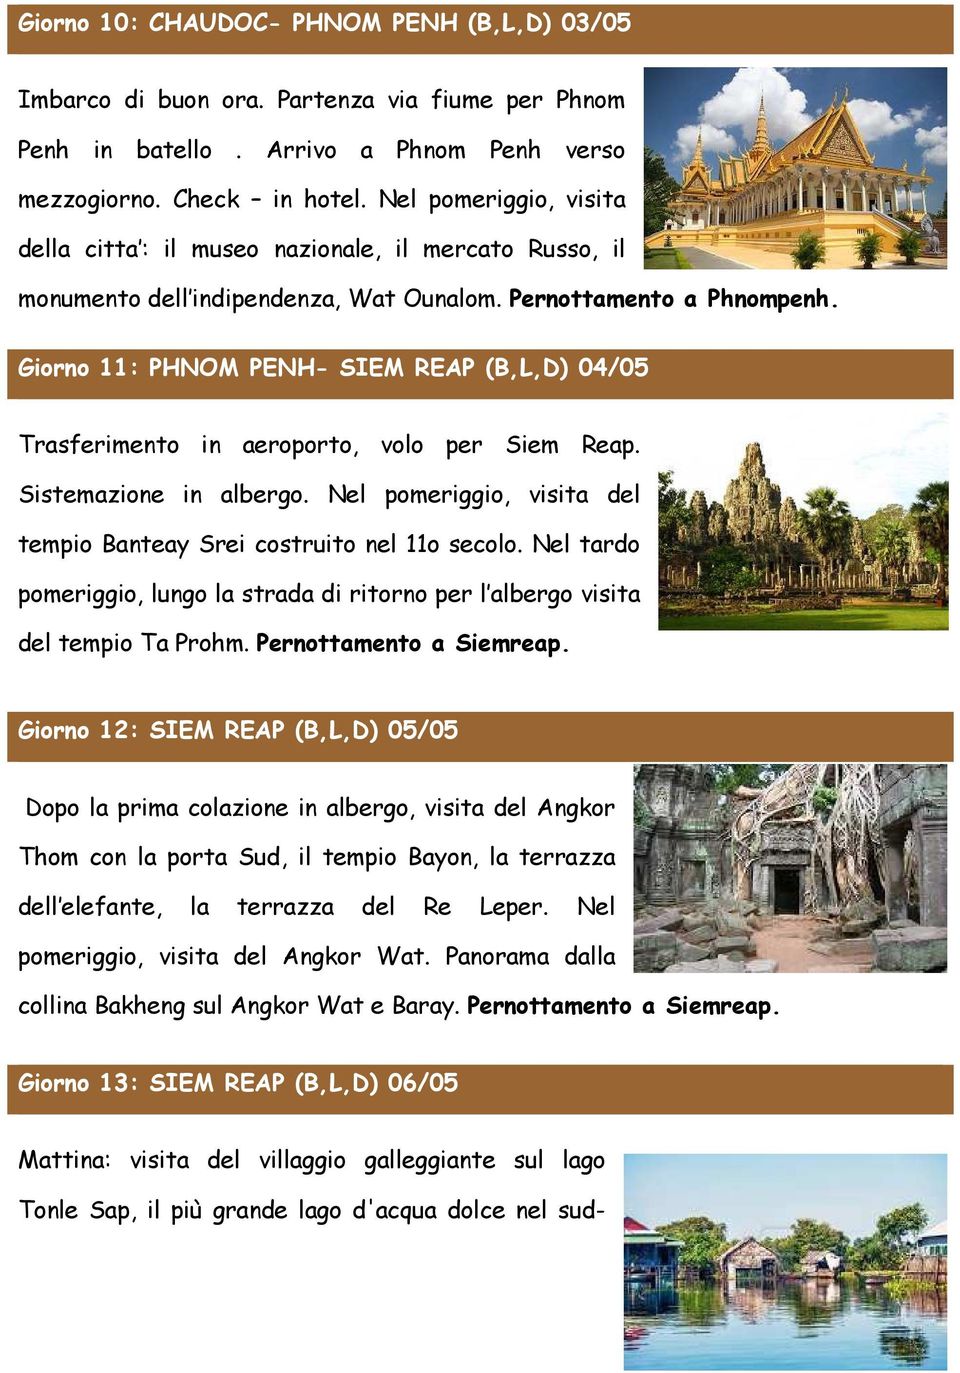 Giorno 11: PHNOM PENH- SIEM REAP (B,L,D) 04/05 Trasferimento in aeroporto, volo per Siem Reap. Sistemazione in albergo. Nel pomeriggio, visita del tempio Banteay Srei costruito nel 11o secolo.